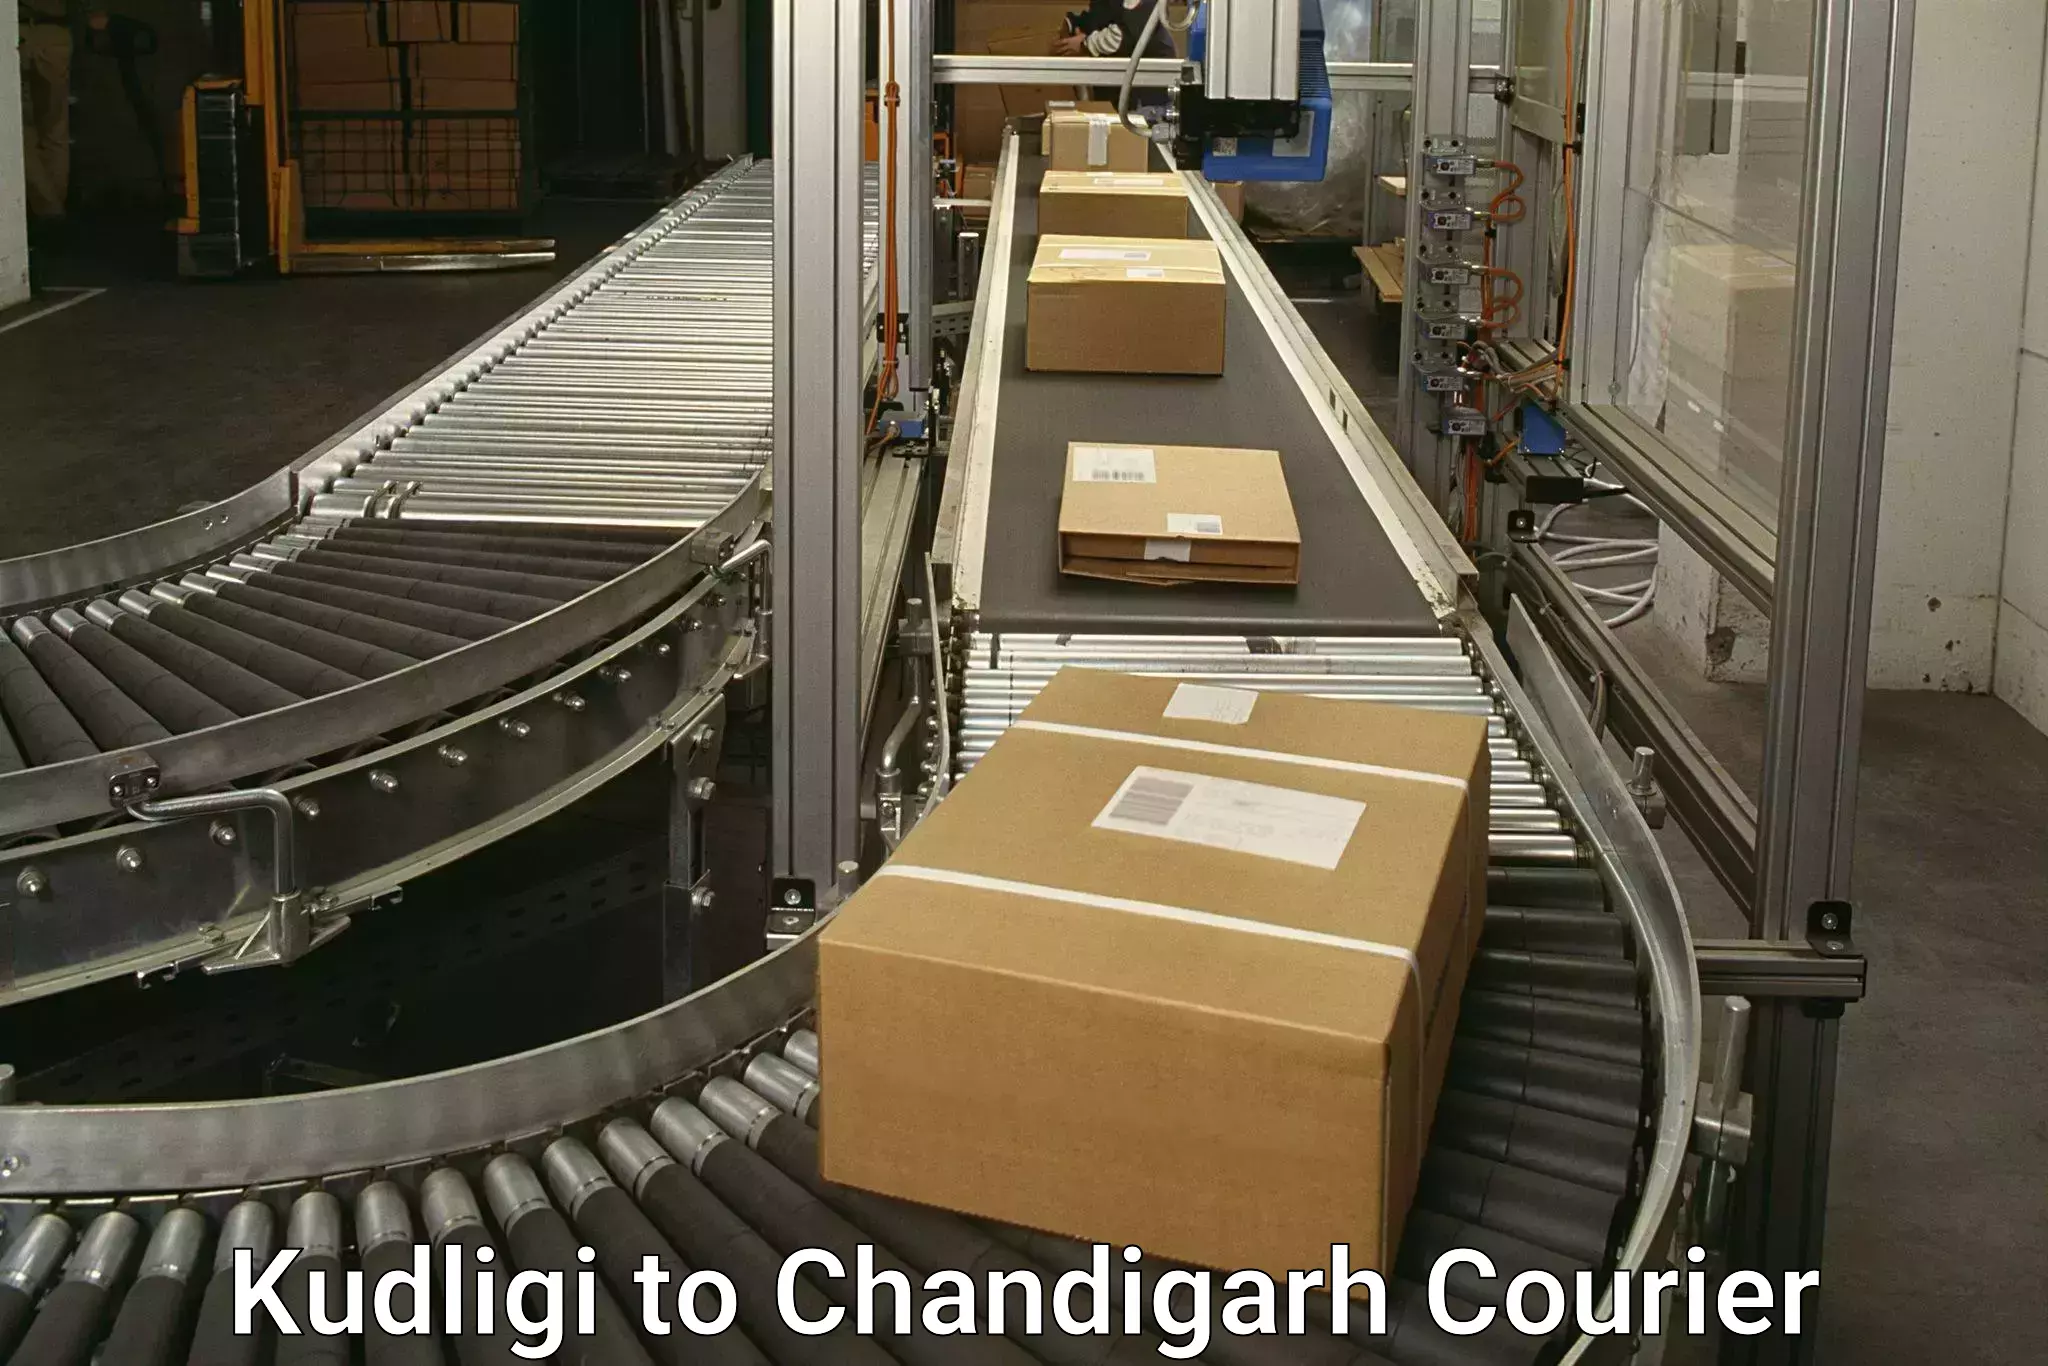 Online shipping calculator Kudligi to Chandigarh